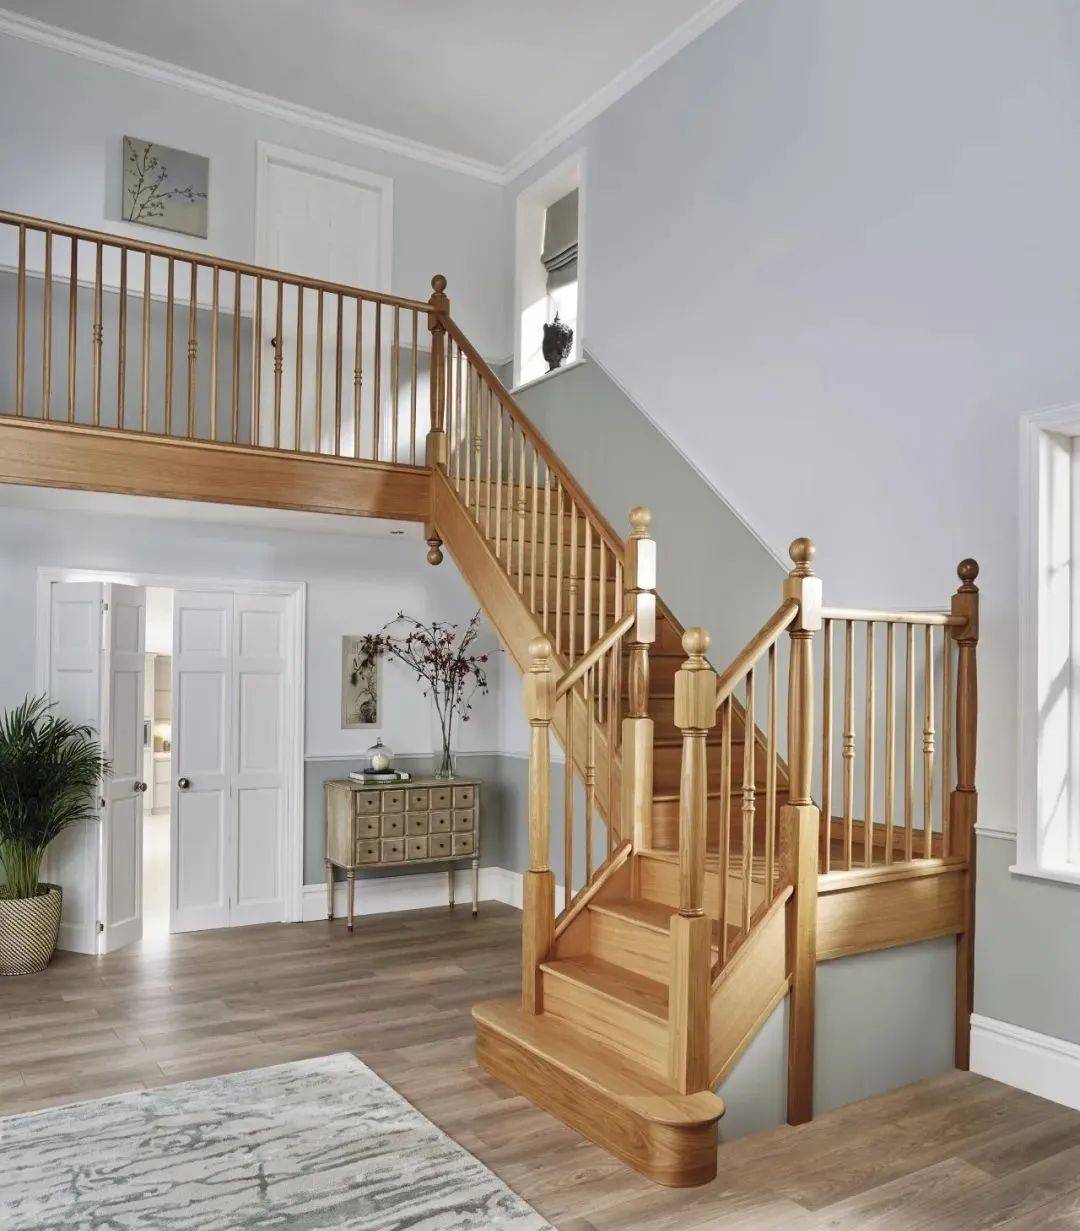 西安宅尚空间设计:实木定制楼梯,既美观又实用!